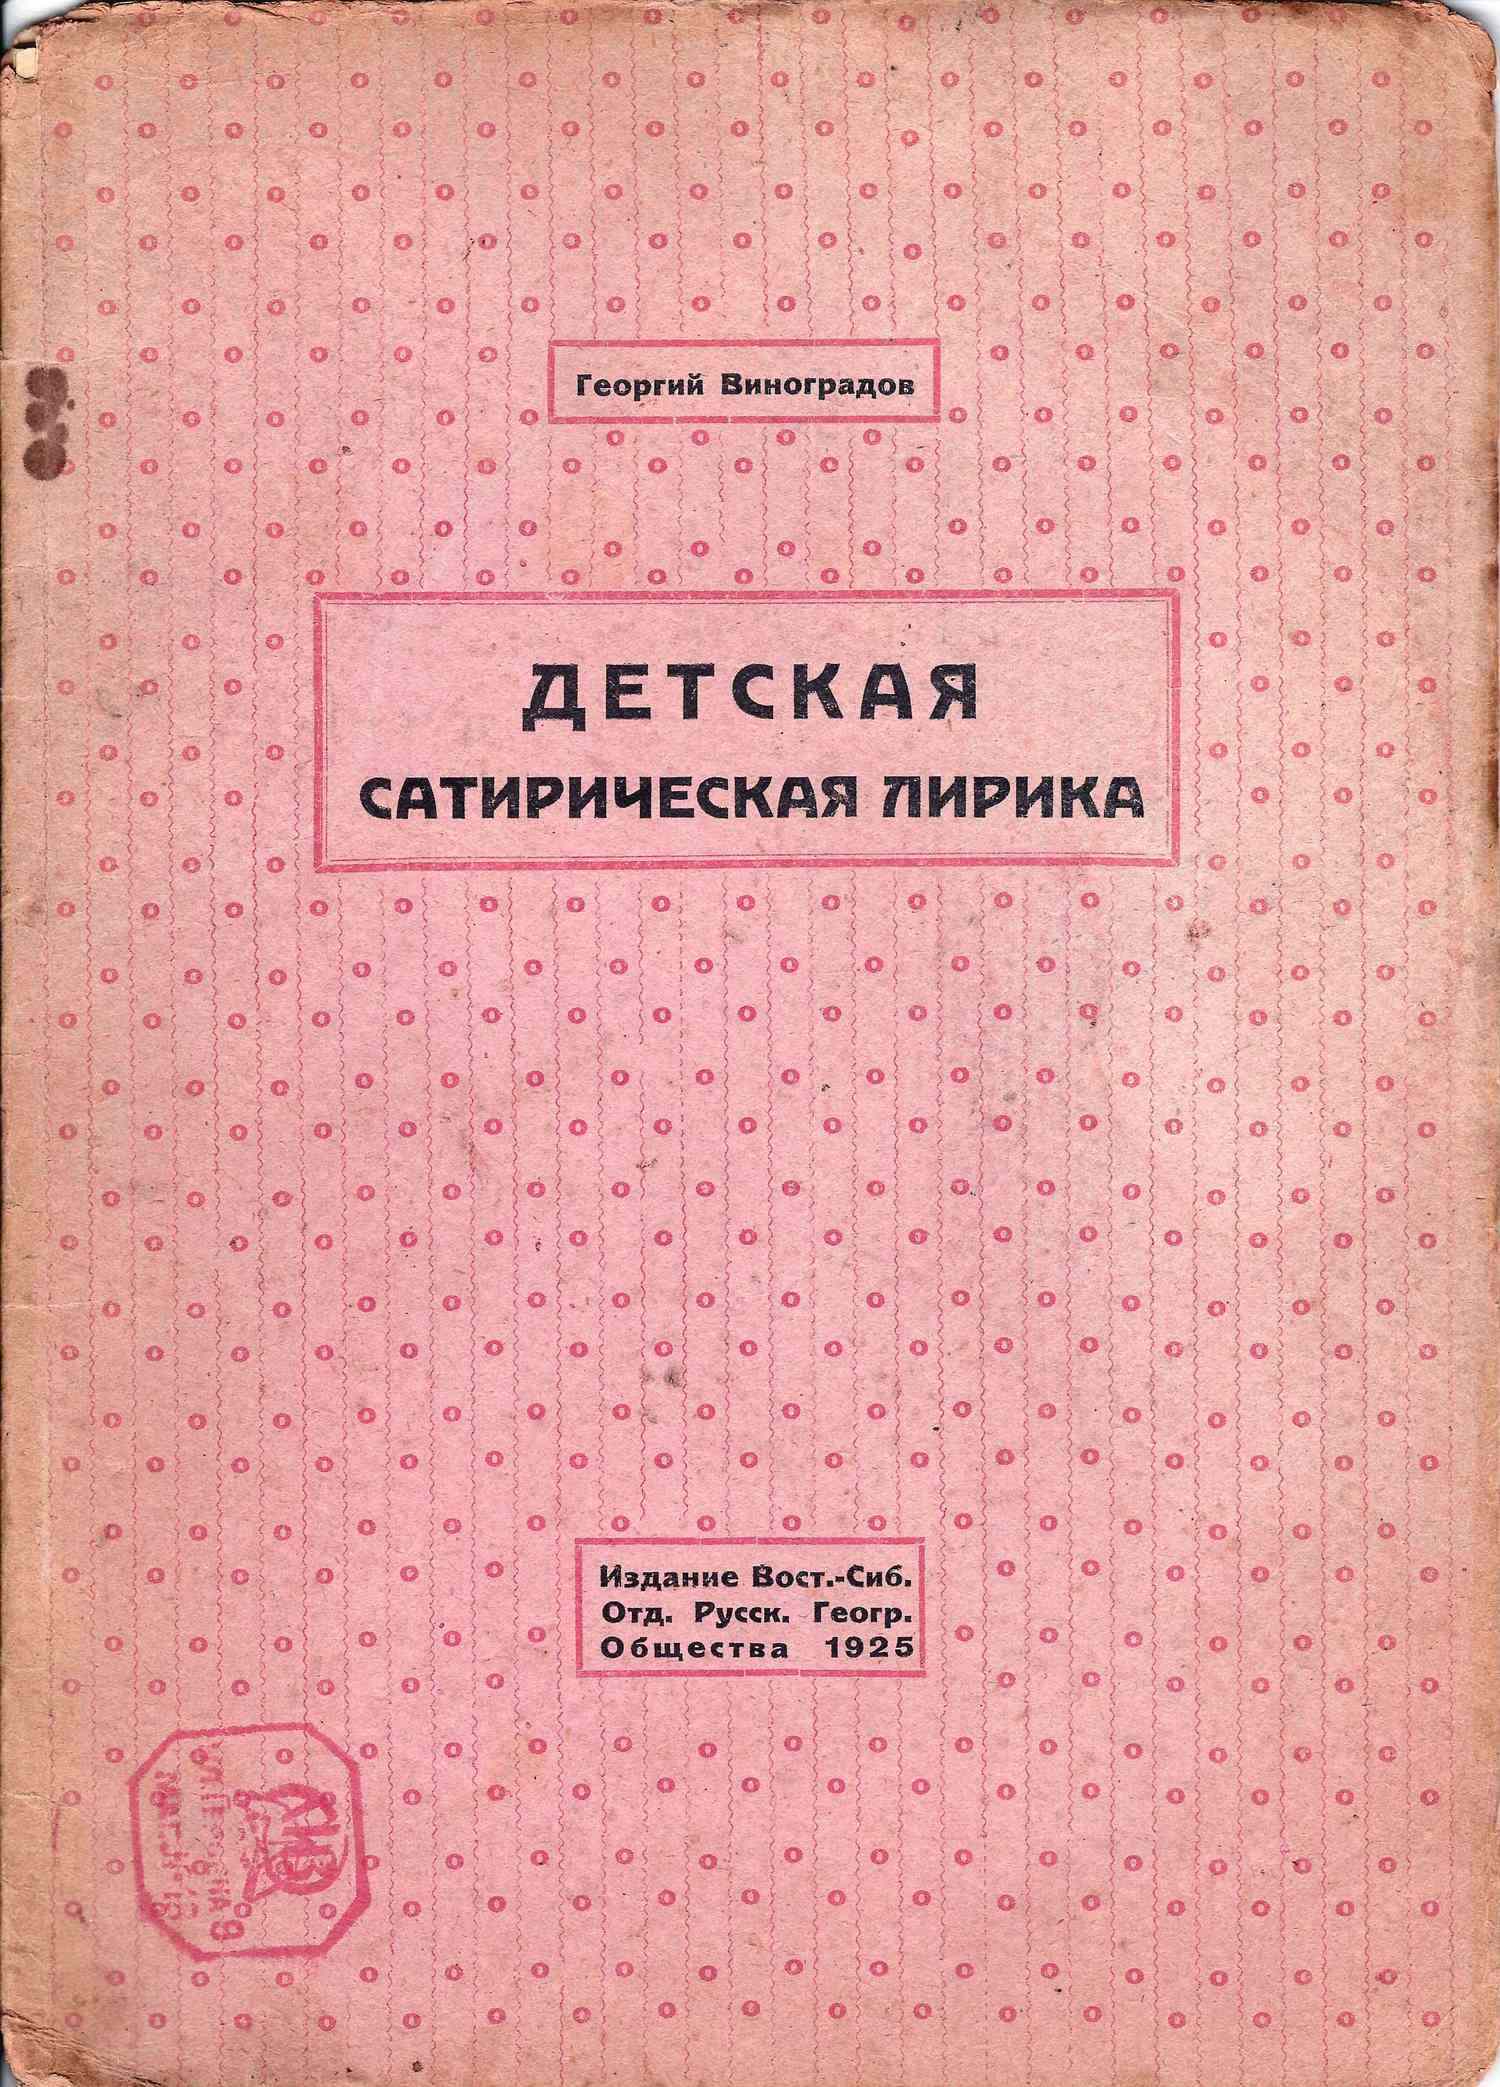 («Матрена - ж..па ядрена») Виноградов Г. Детская сатирическая лирика (Иркутск, 1925).